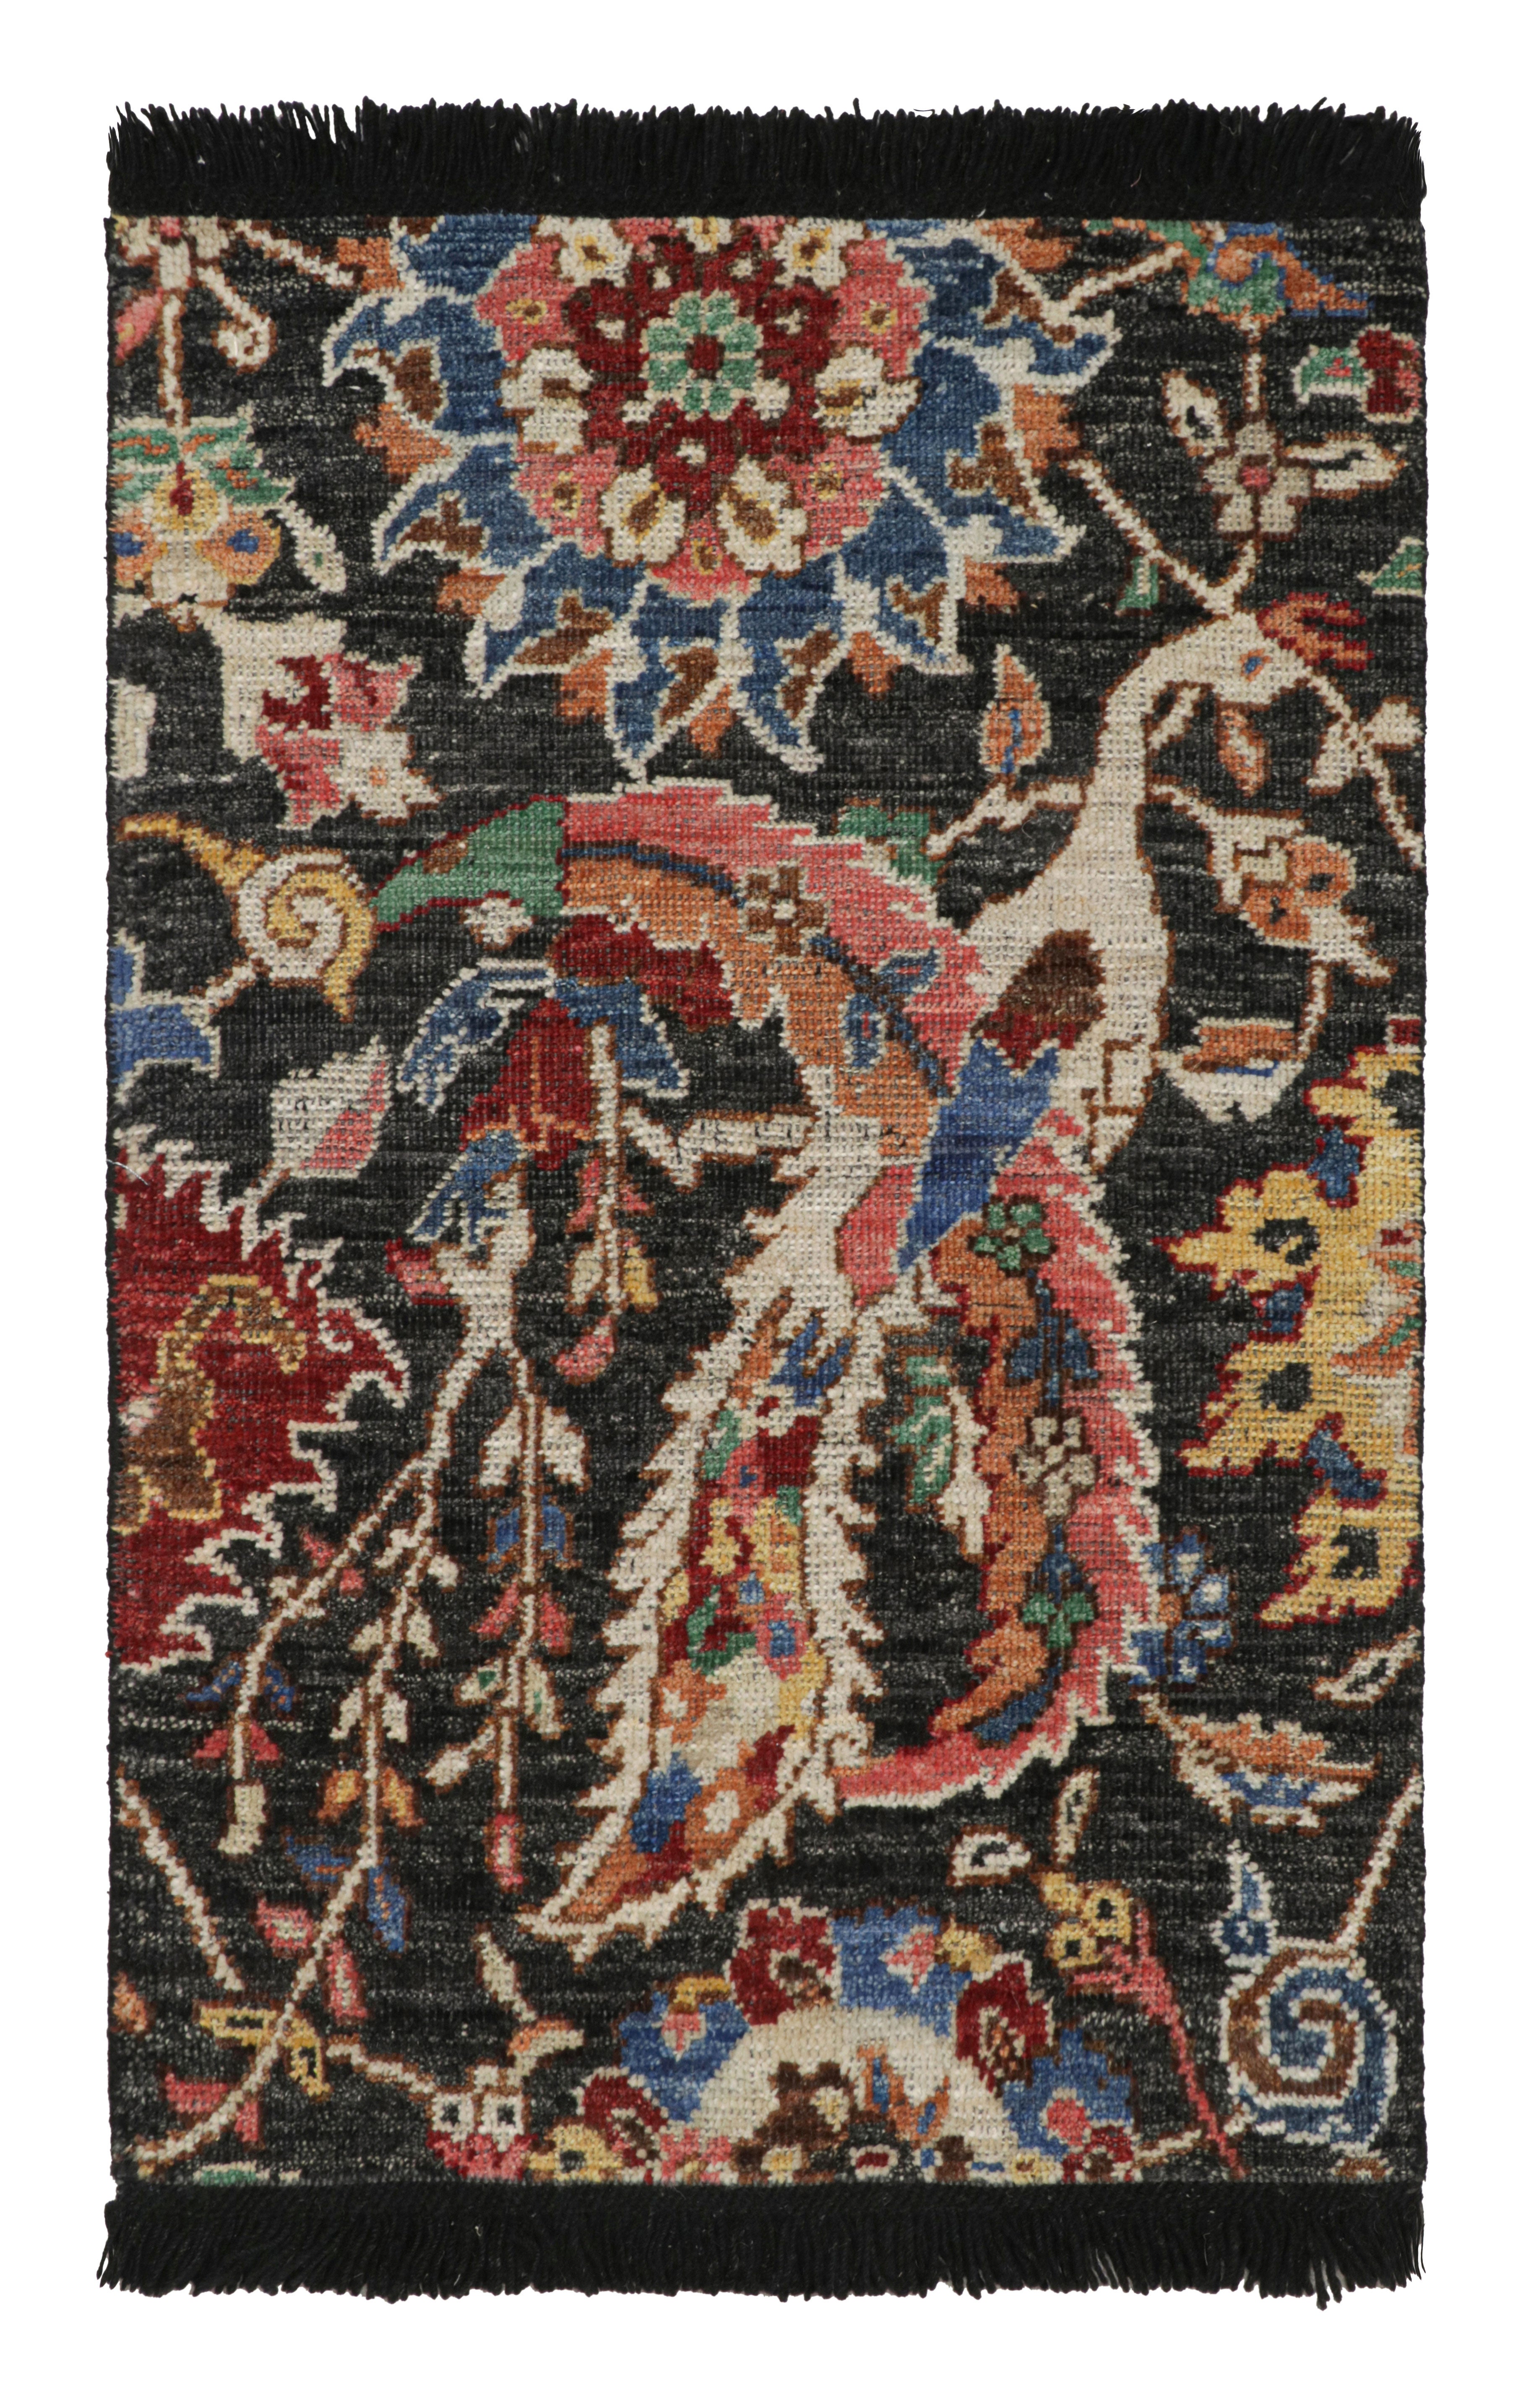 Rug & Kilim's Persischer Kerman Stil Teppich in Schwarz mit lebhaften Blumenmustern 